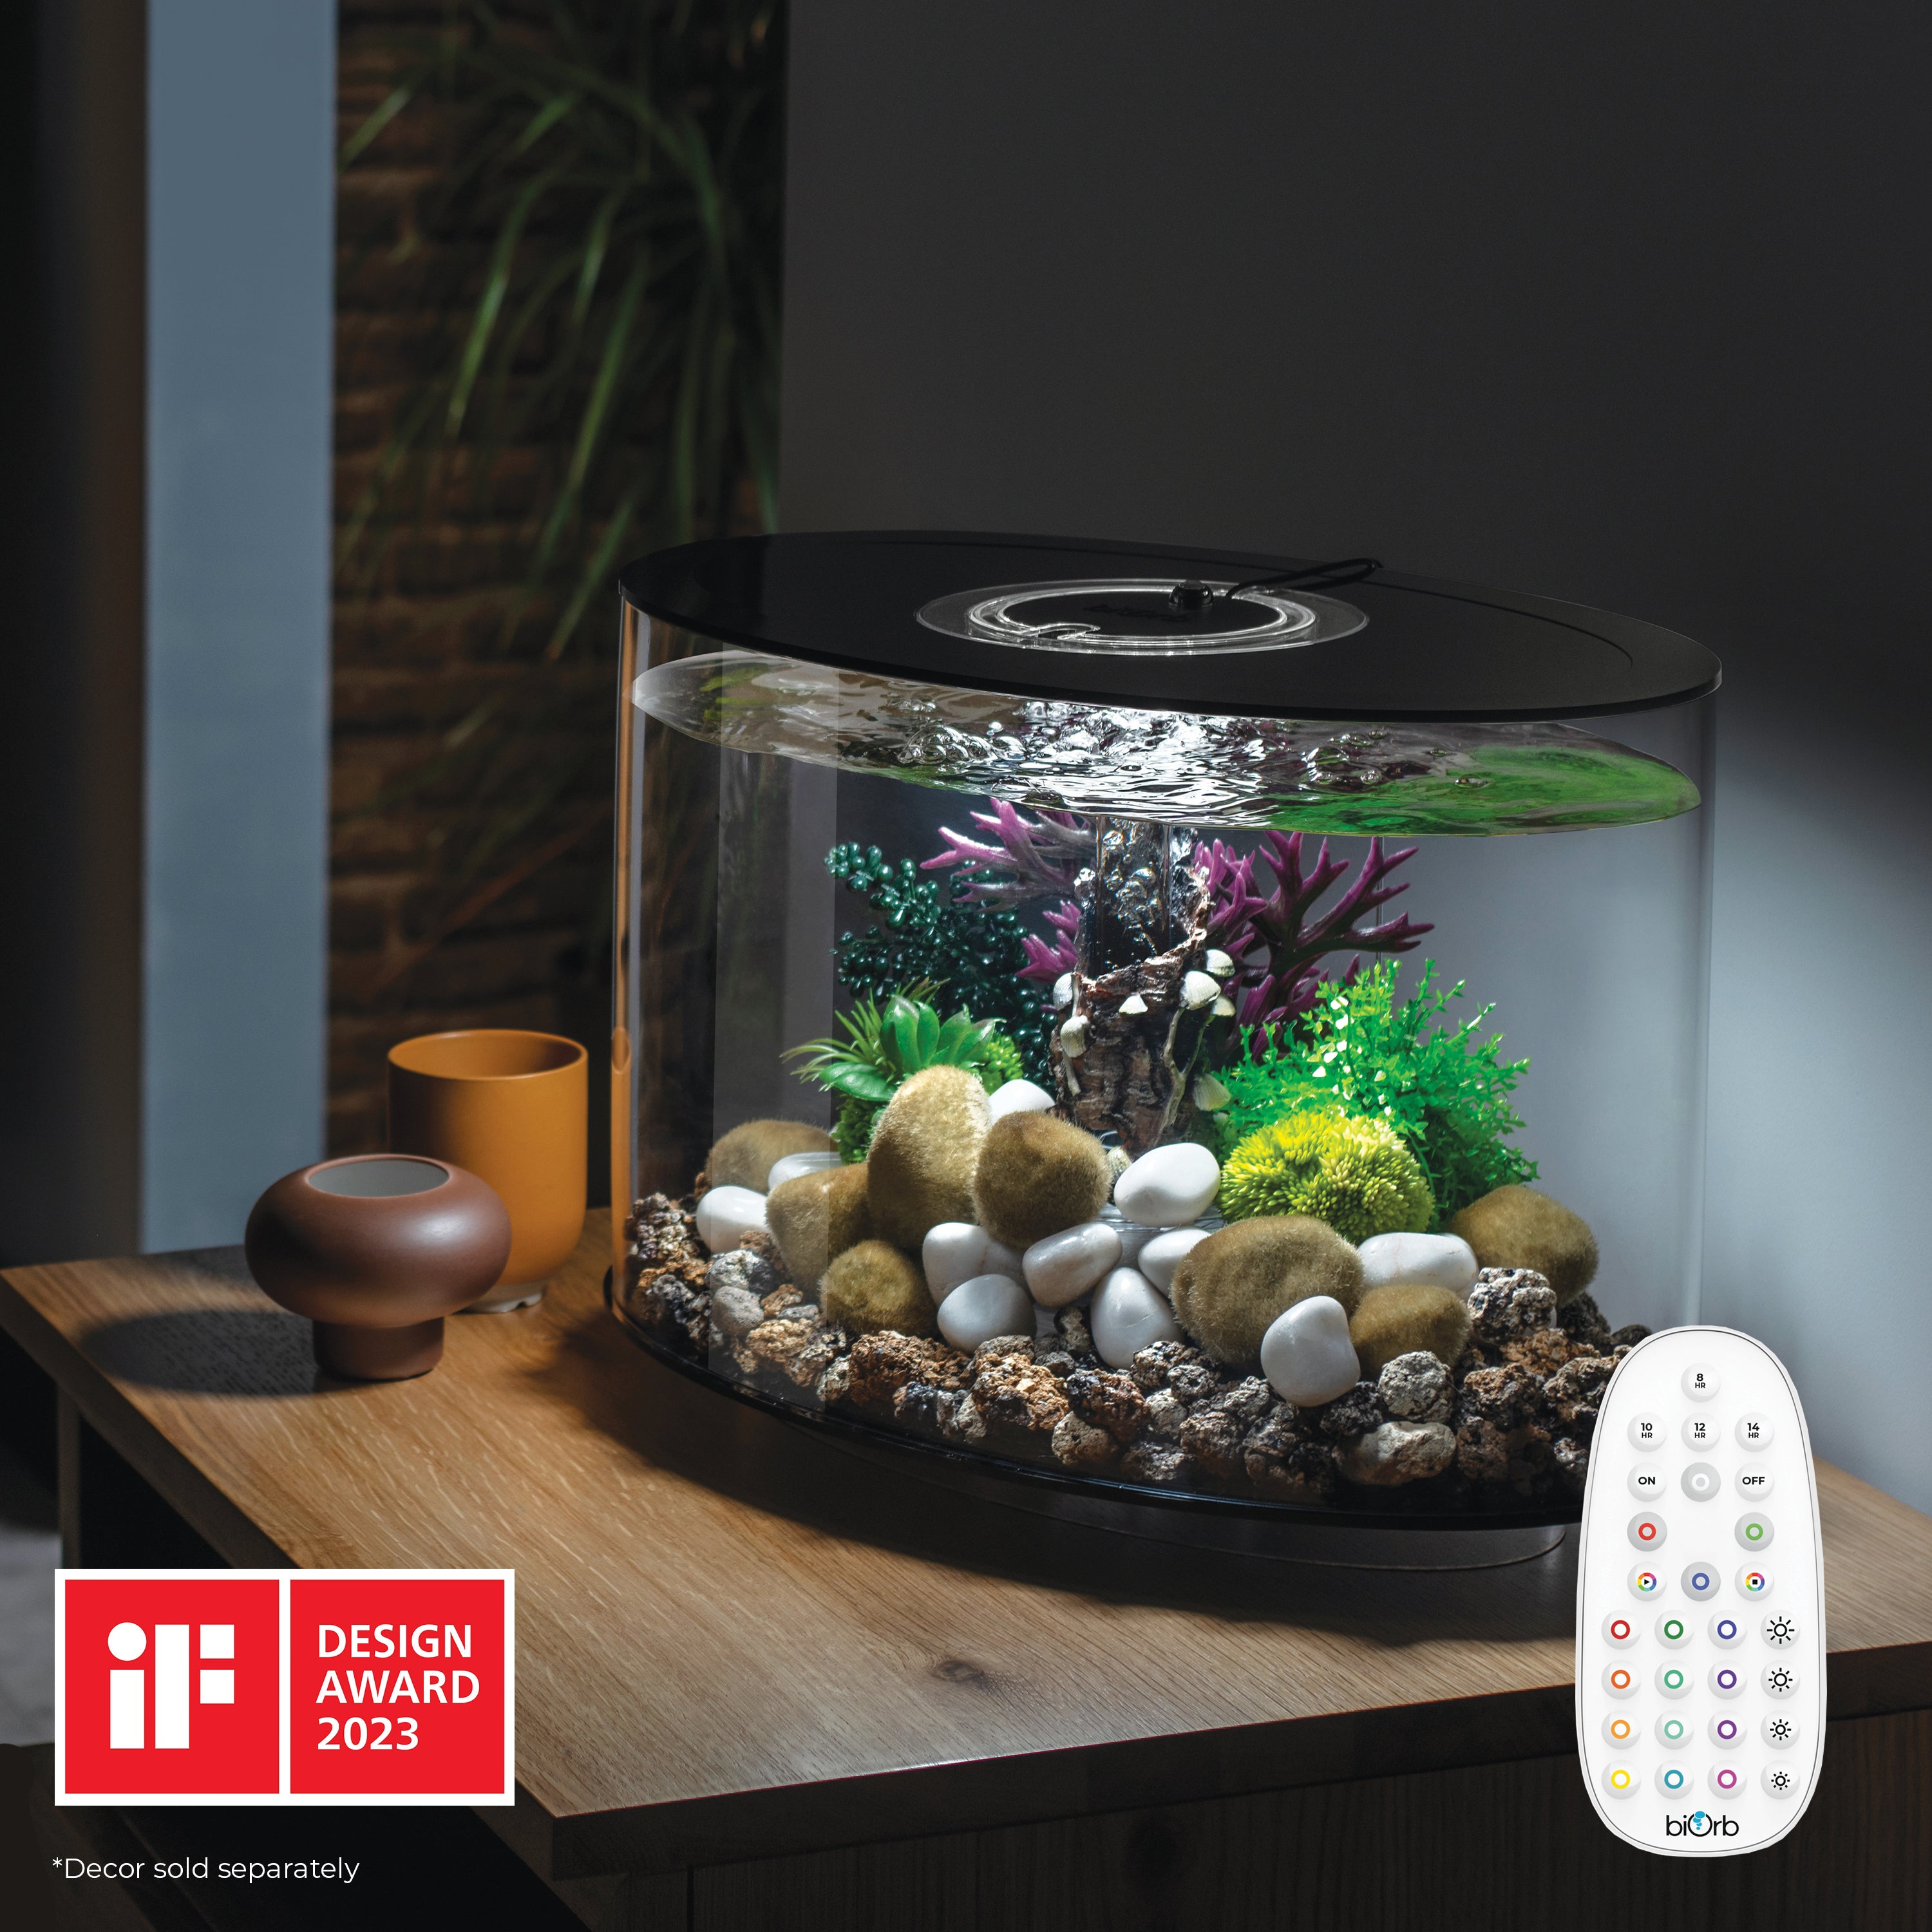 Get inspiration for your aquarium LOOP 15 Aquarium with MCR Light - 4 gallon - In use